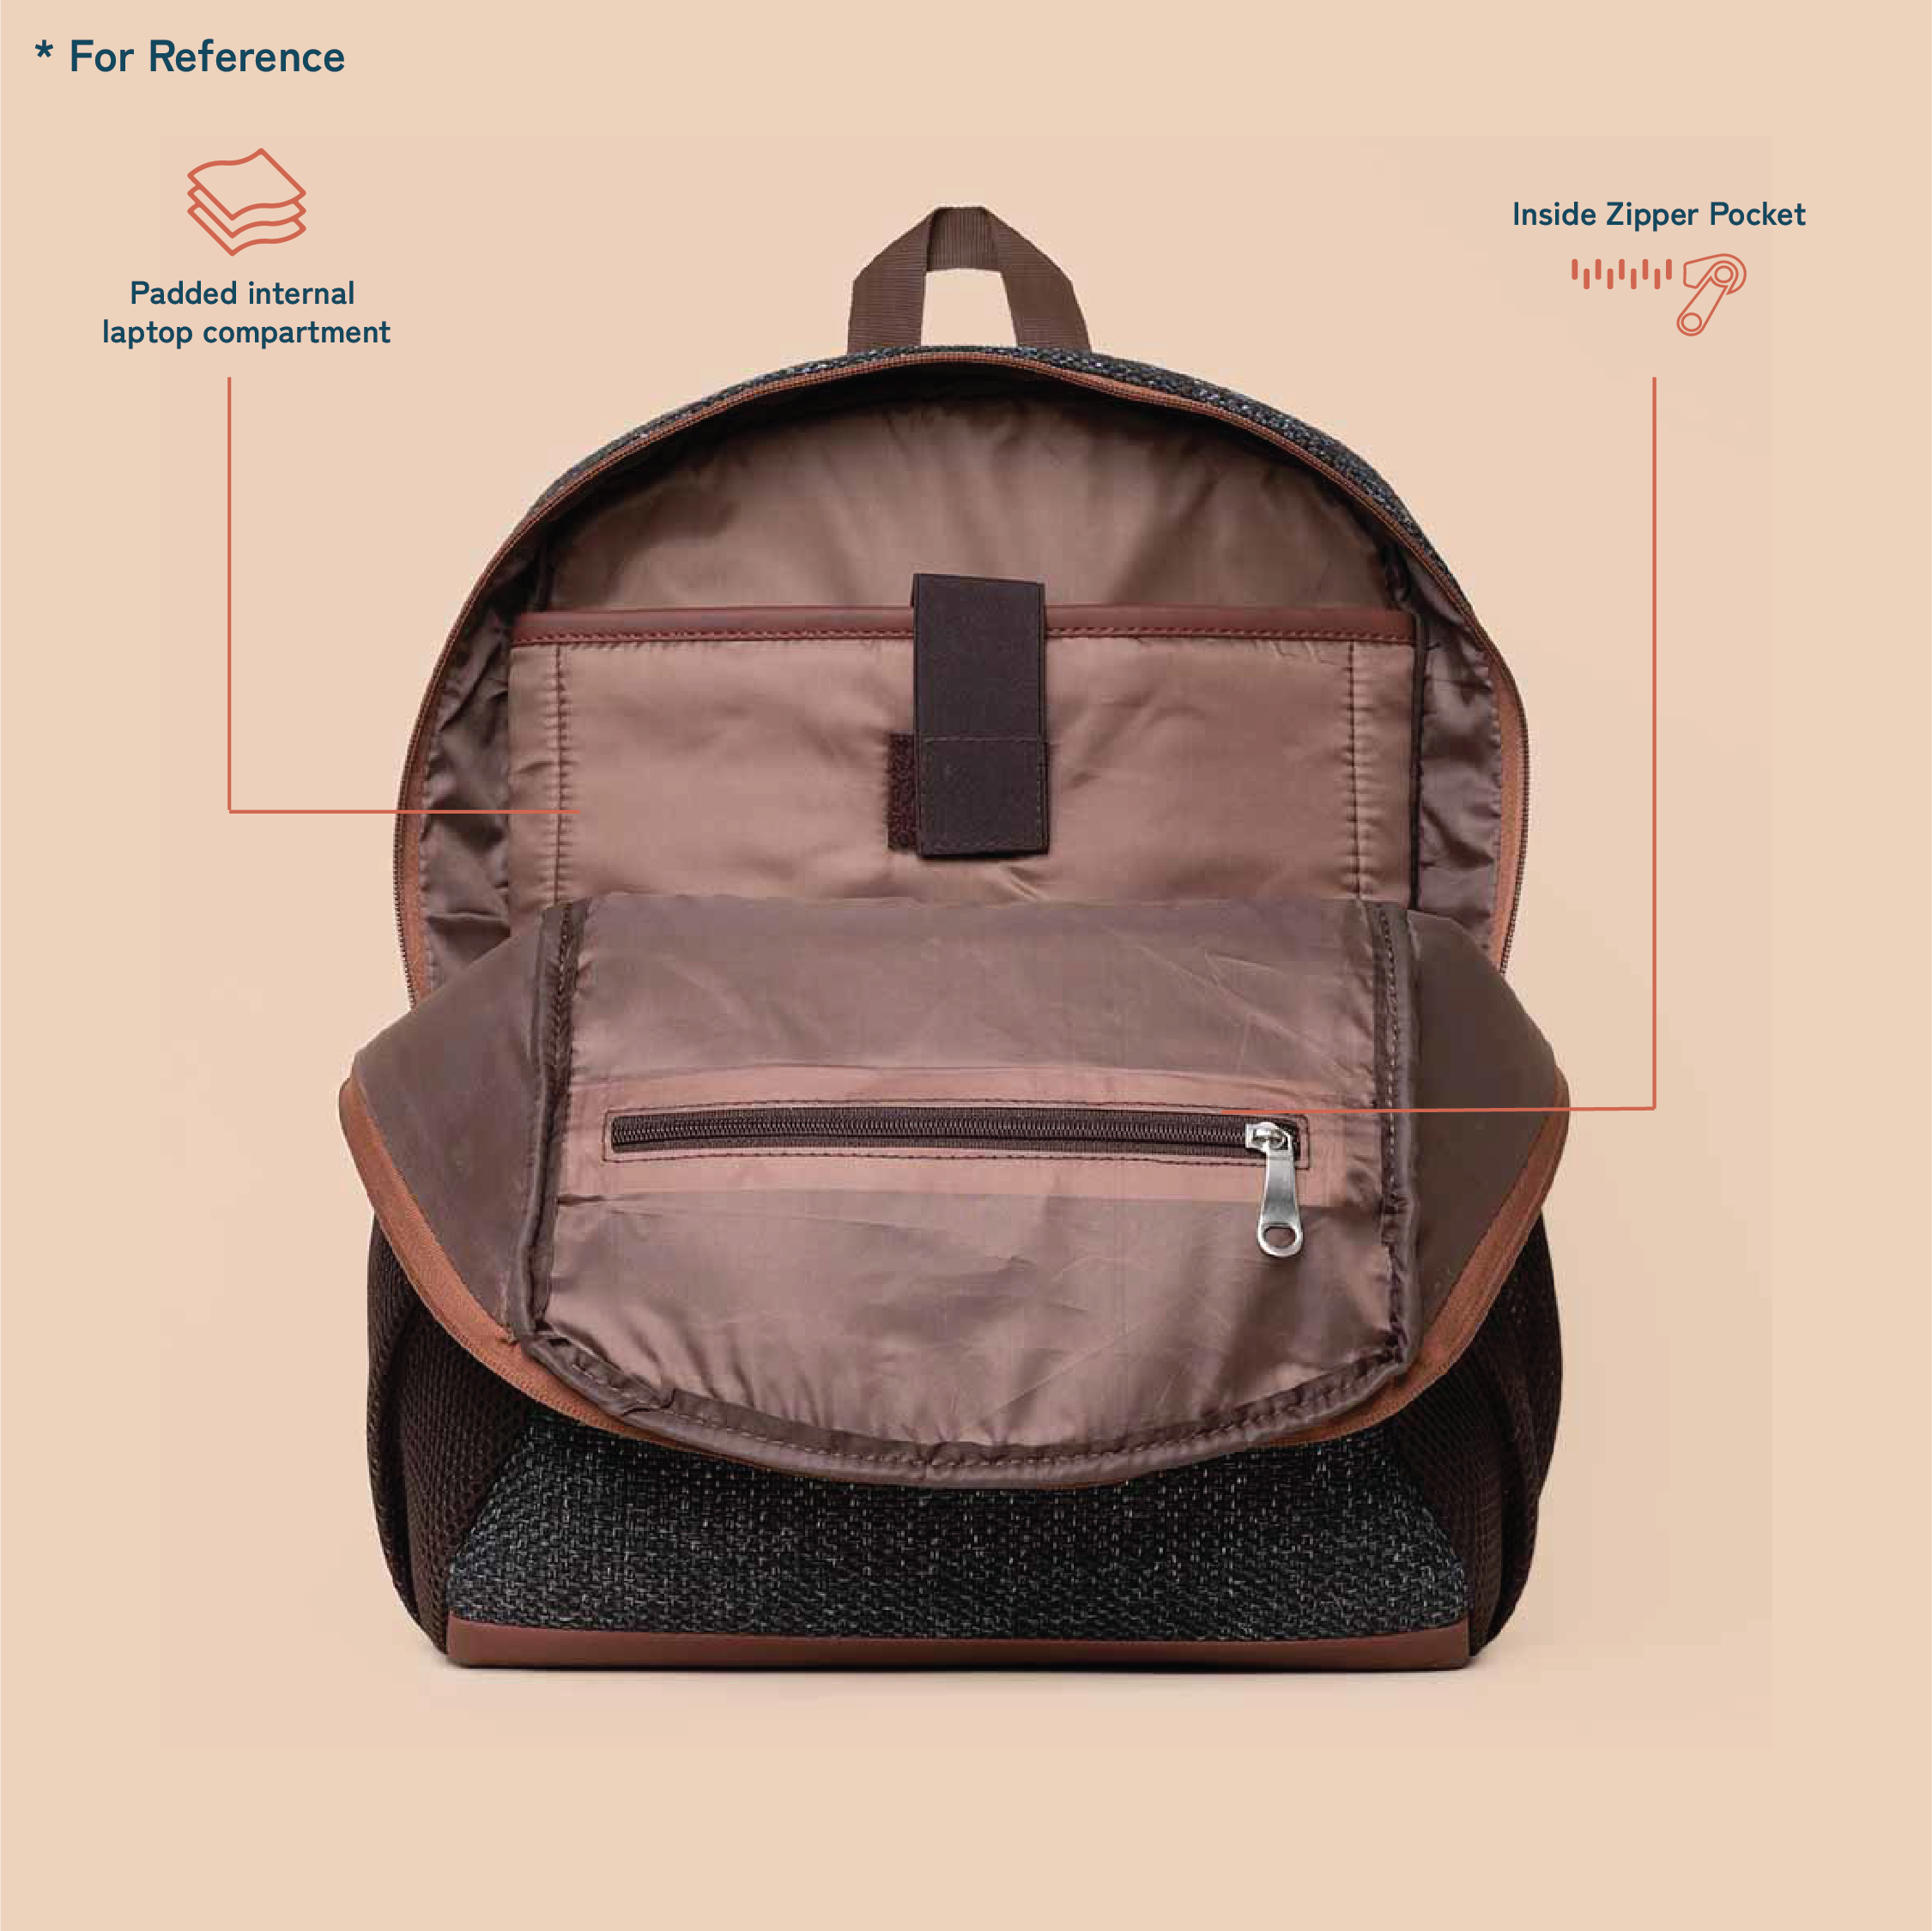 Periyar Weaves Classic Backpack